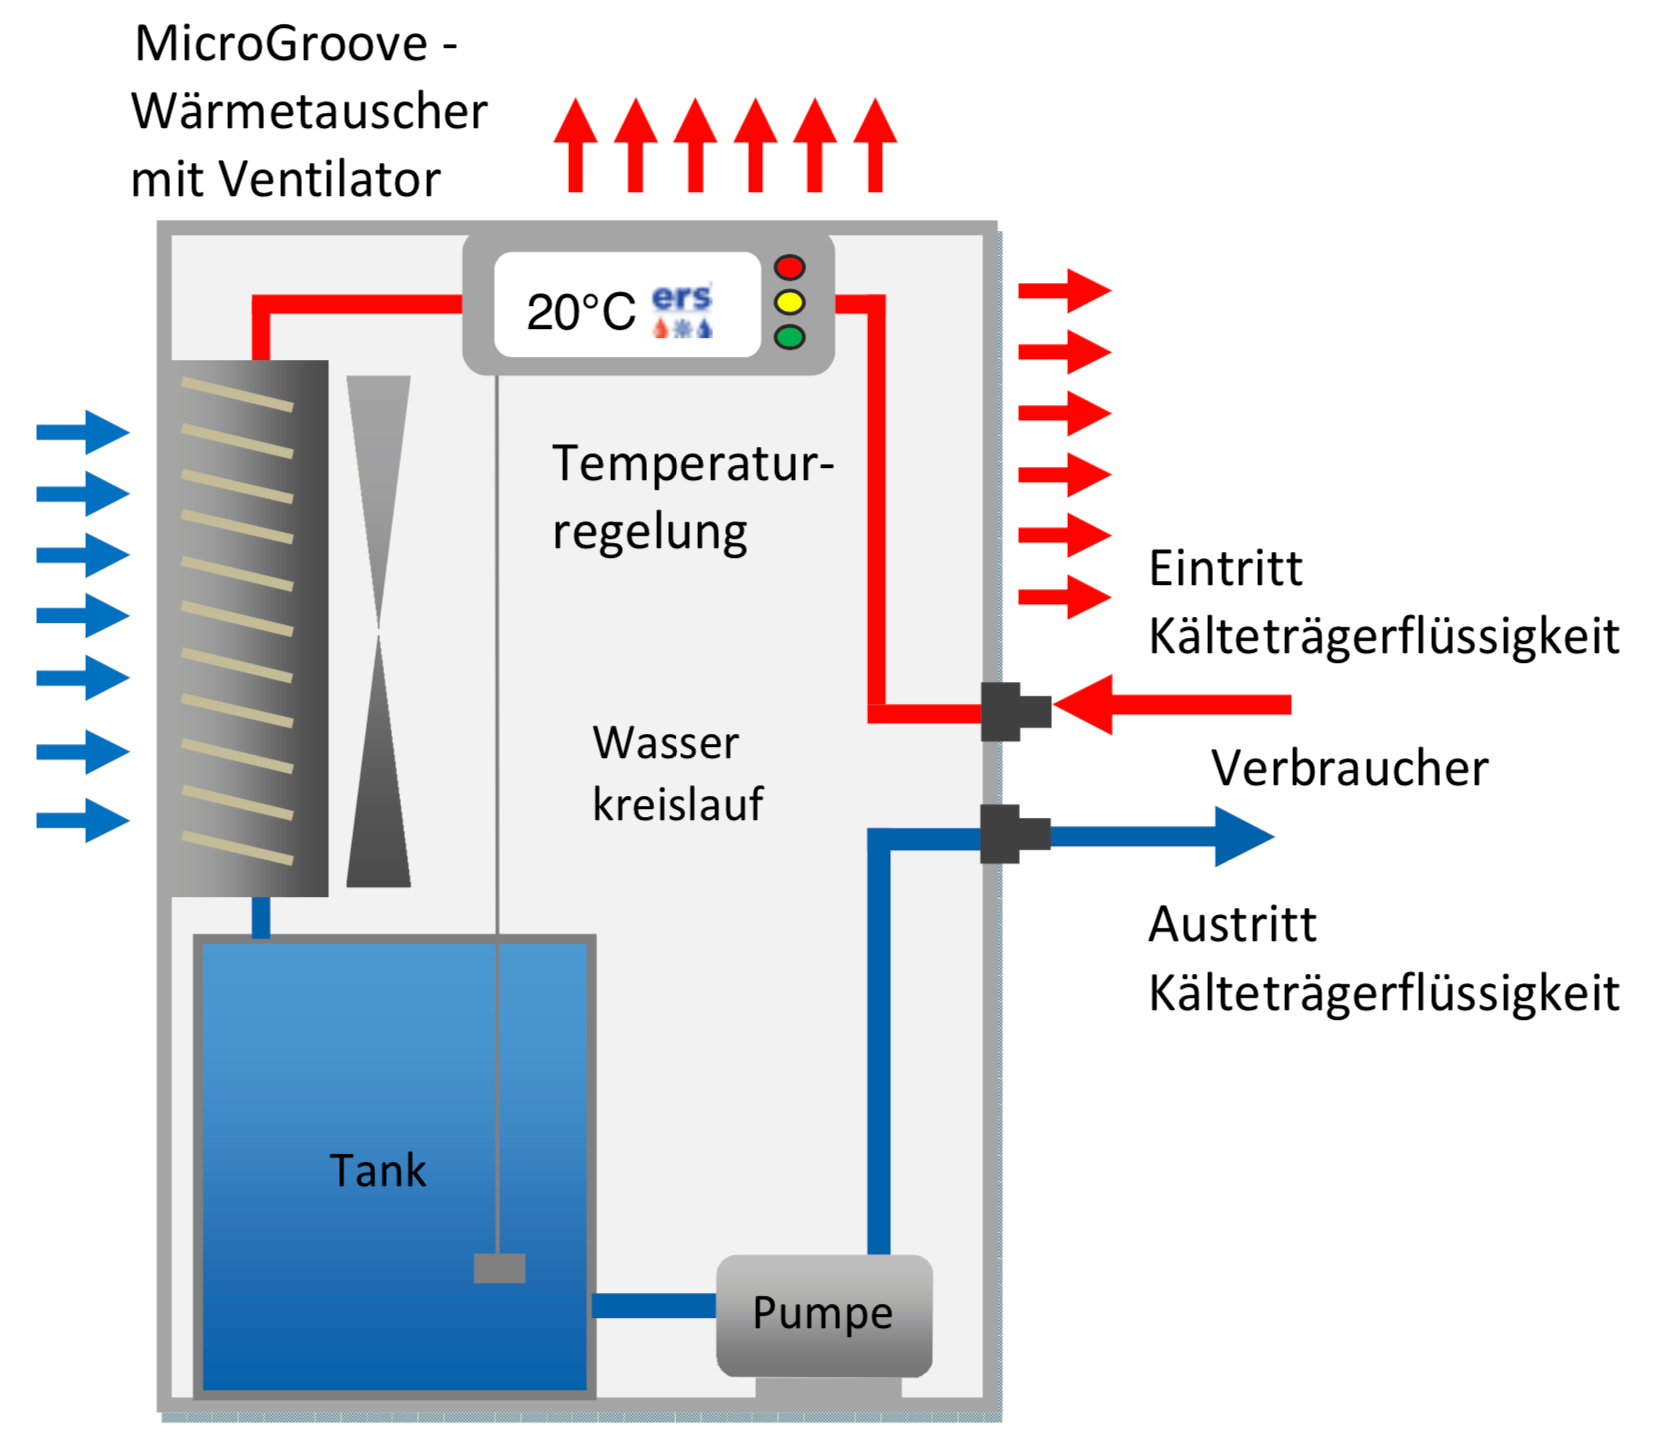 Luft-Wasser-Wärmetausche mit Ventilator und Tank